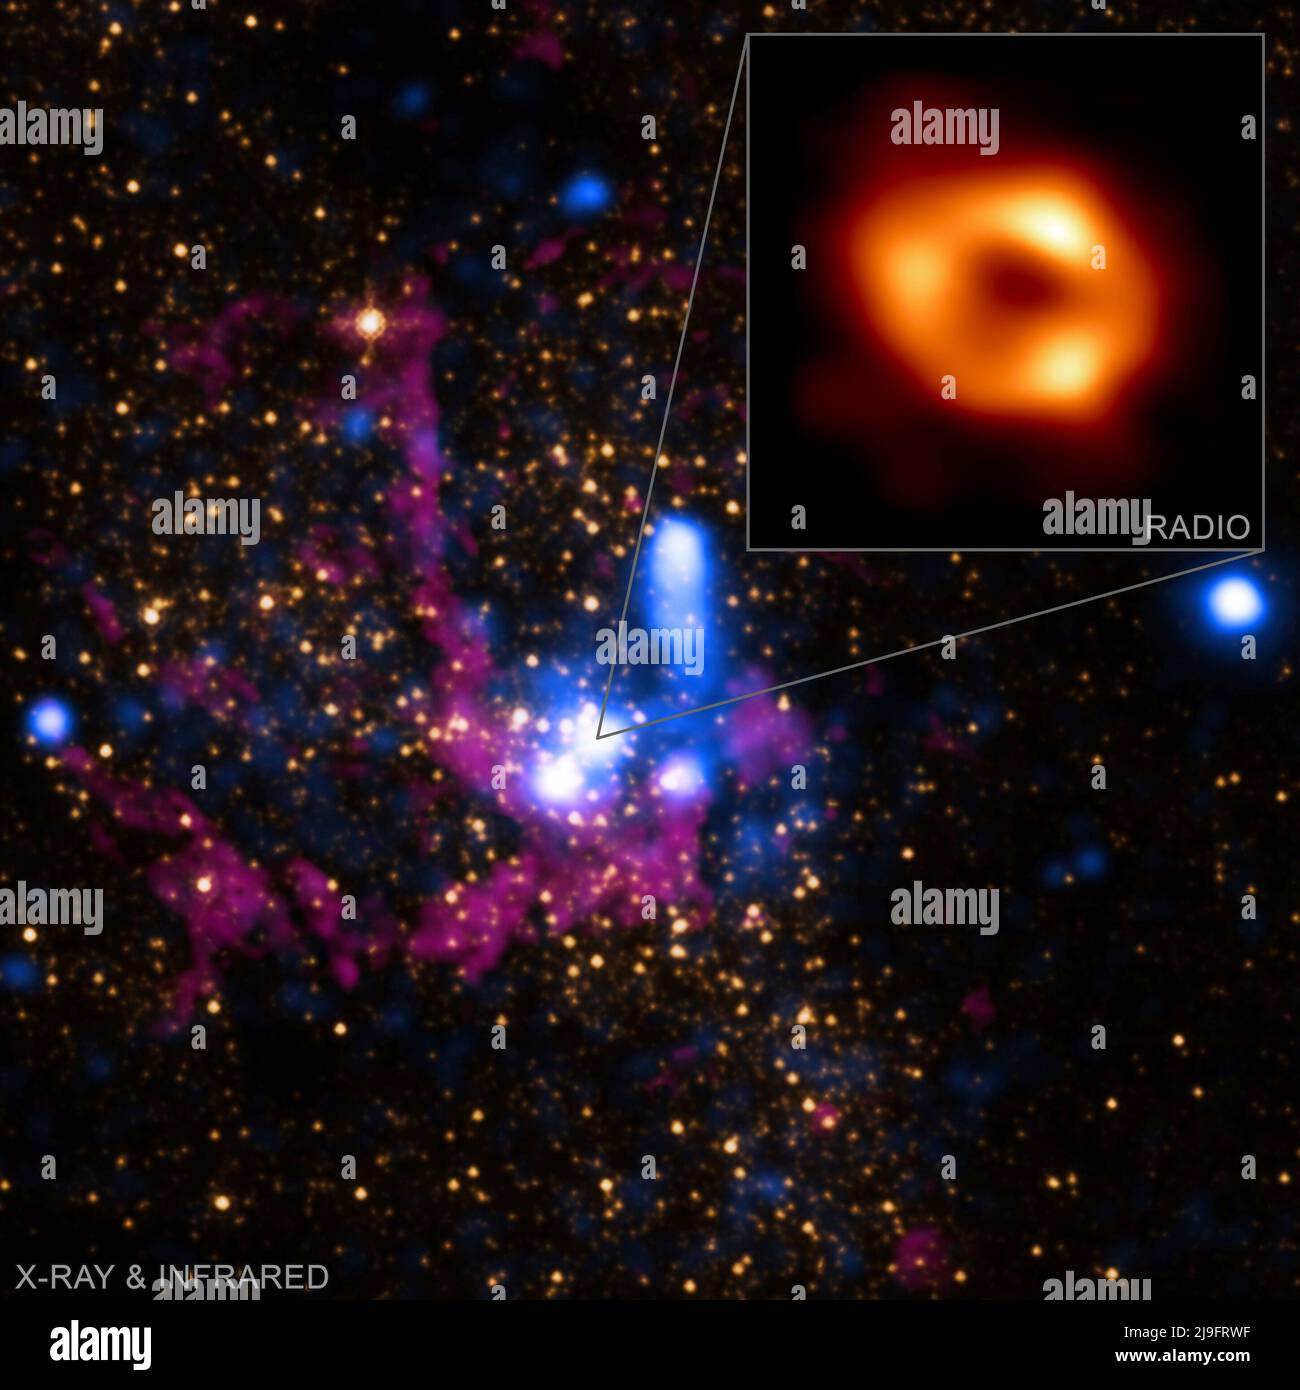 Tre telescopi della NASA aiutano gli astronomi a conoscere meglio il buco nero supermassivo della Via Lattea, catturato nell'ultima immagine notevole del telescopio Event Horizon (EHT). L'Osservatorio dei raggi X di Chandra, il Telescopio nucleare (NuStar) e l'Osservatorio di Neil Gehrels Swift (Swift) osservano tutti i raggi X dalle loro posizioni nell'orbita terrestre. I raggi X passano attraverso gran parte del gas e della polvere che blocca la vista ottica del centro della Galassia a circa 27.000 anni luce dalla Terra. La nuova immagine EHT del buco nero centrale della Via Lattea — conosciuta come Sagittario A* (abbreviata come SGR Foto Stock